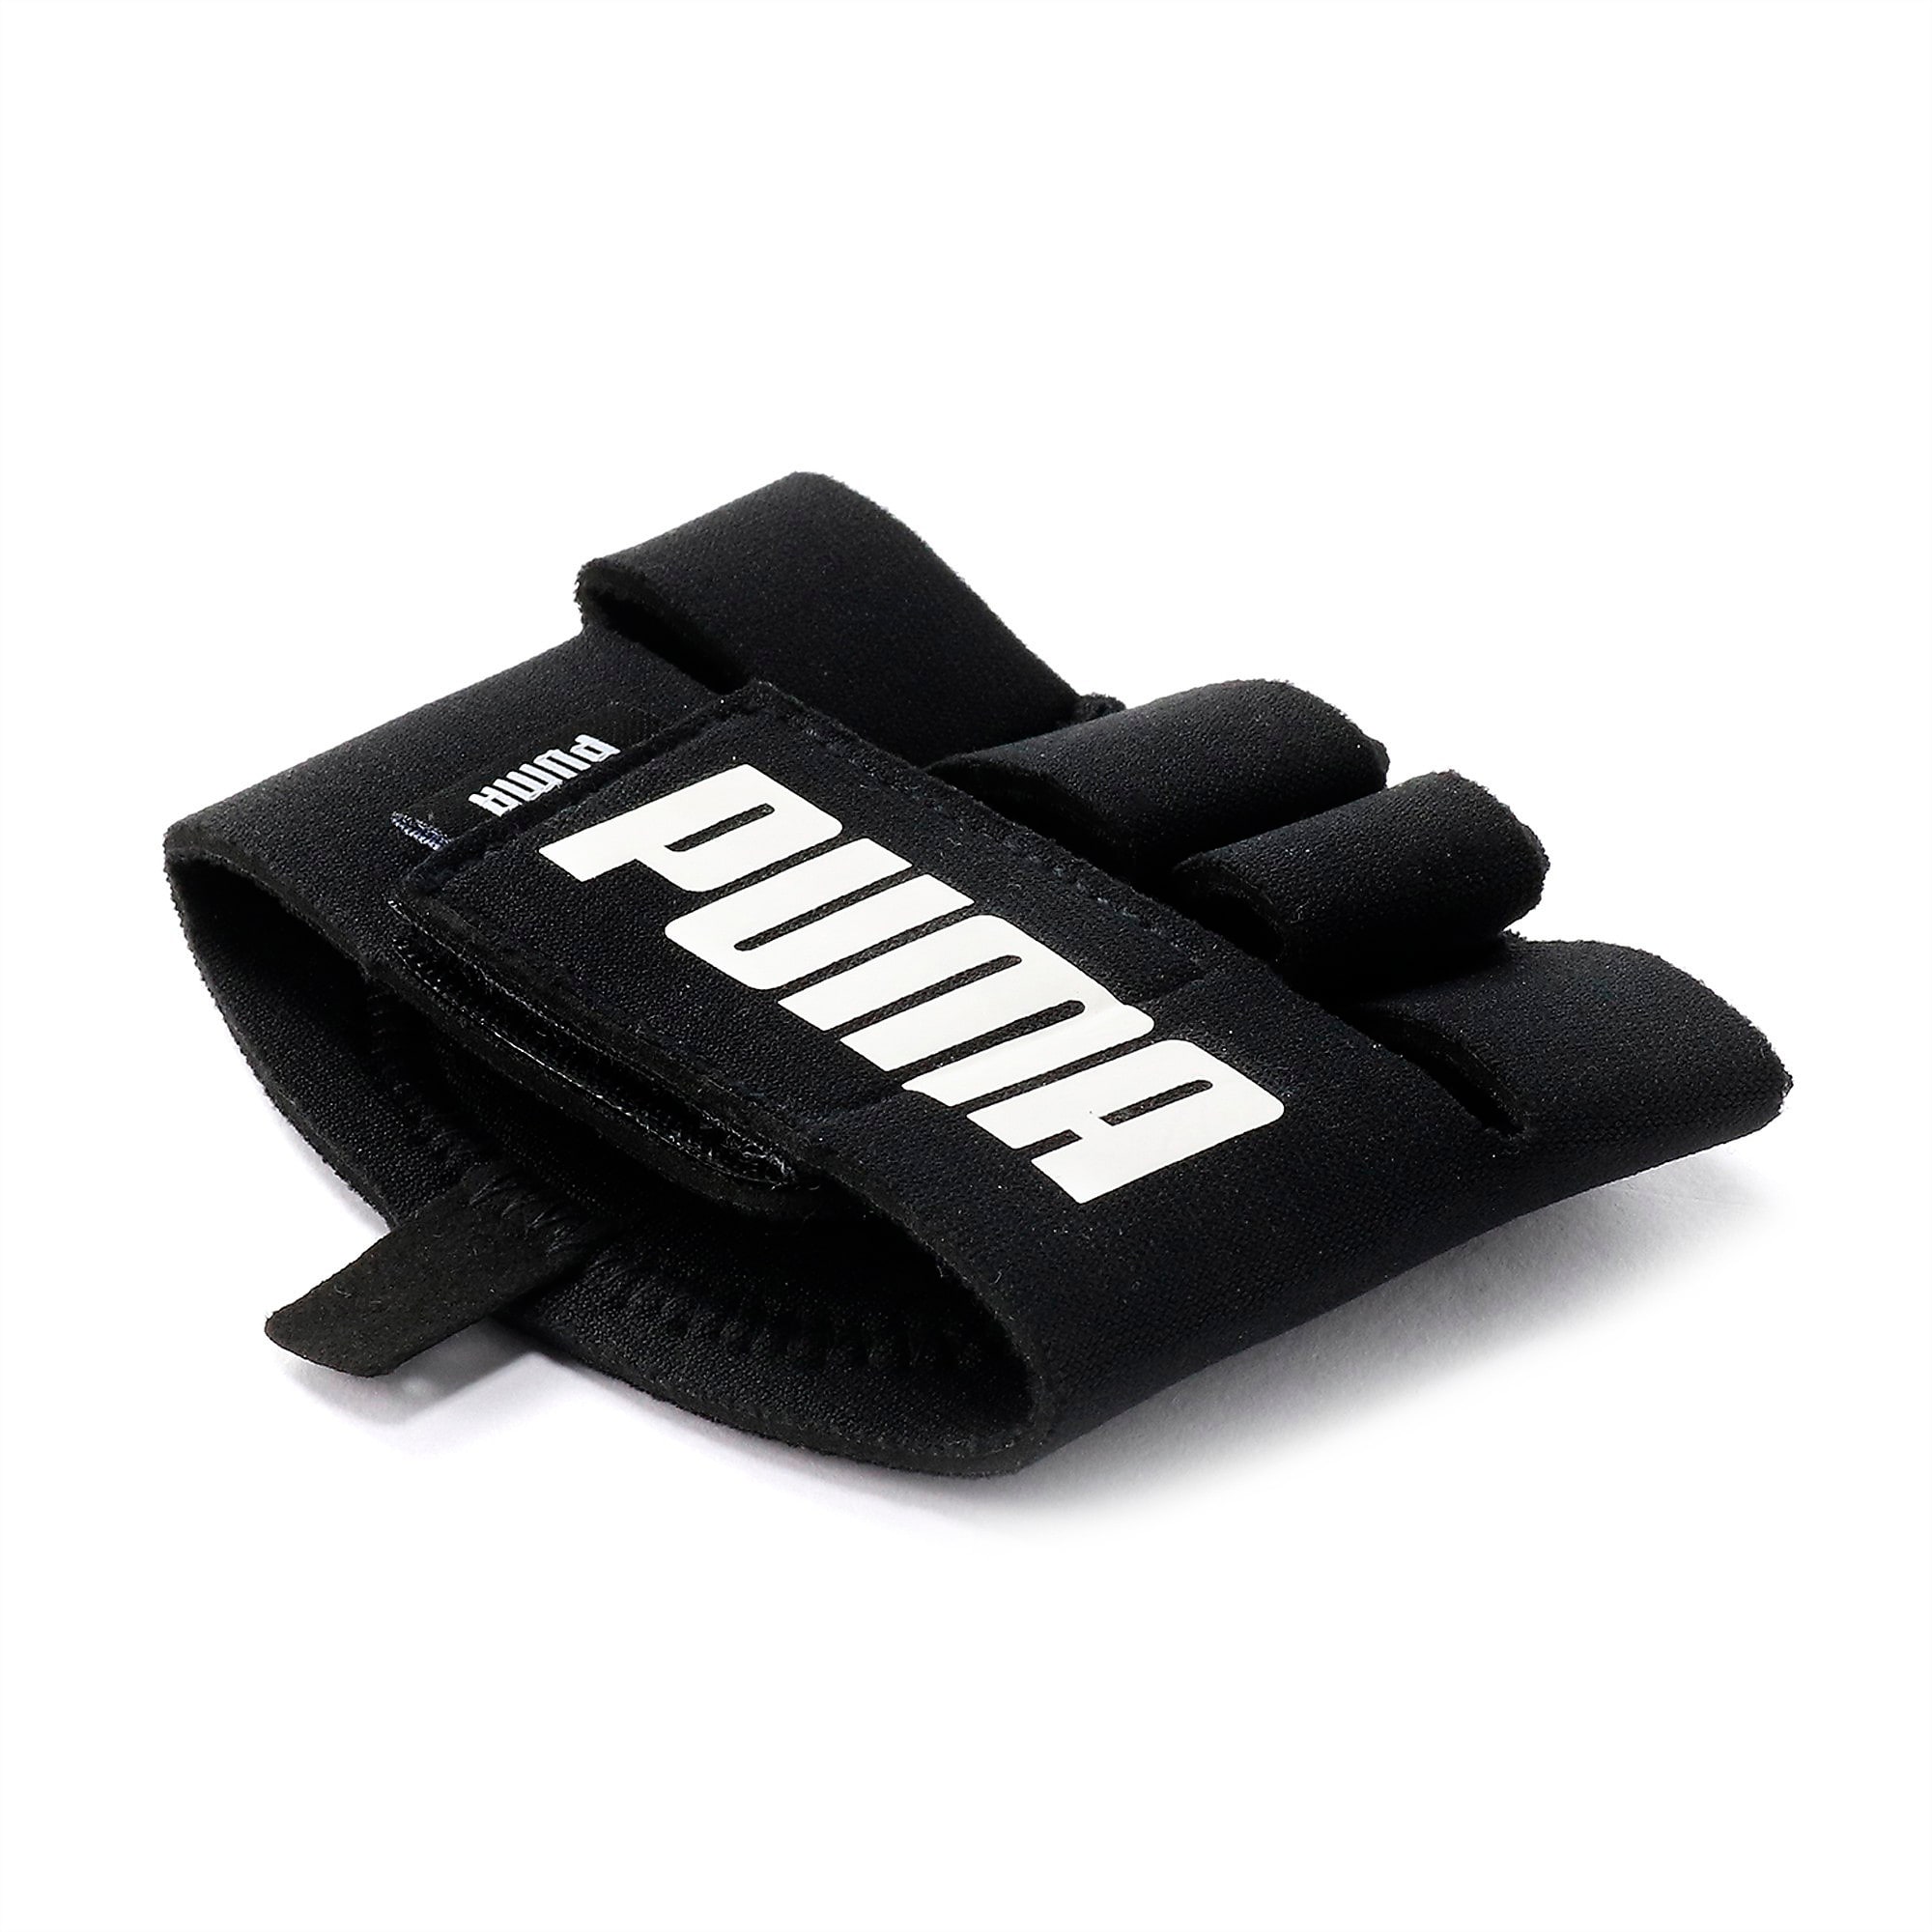 PUMA Essential Training Grip Handschuhe Für Damen, Schwarz/Weiß, Größe: M, Accessoires